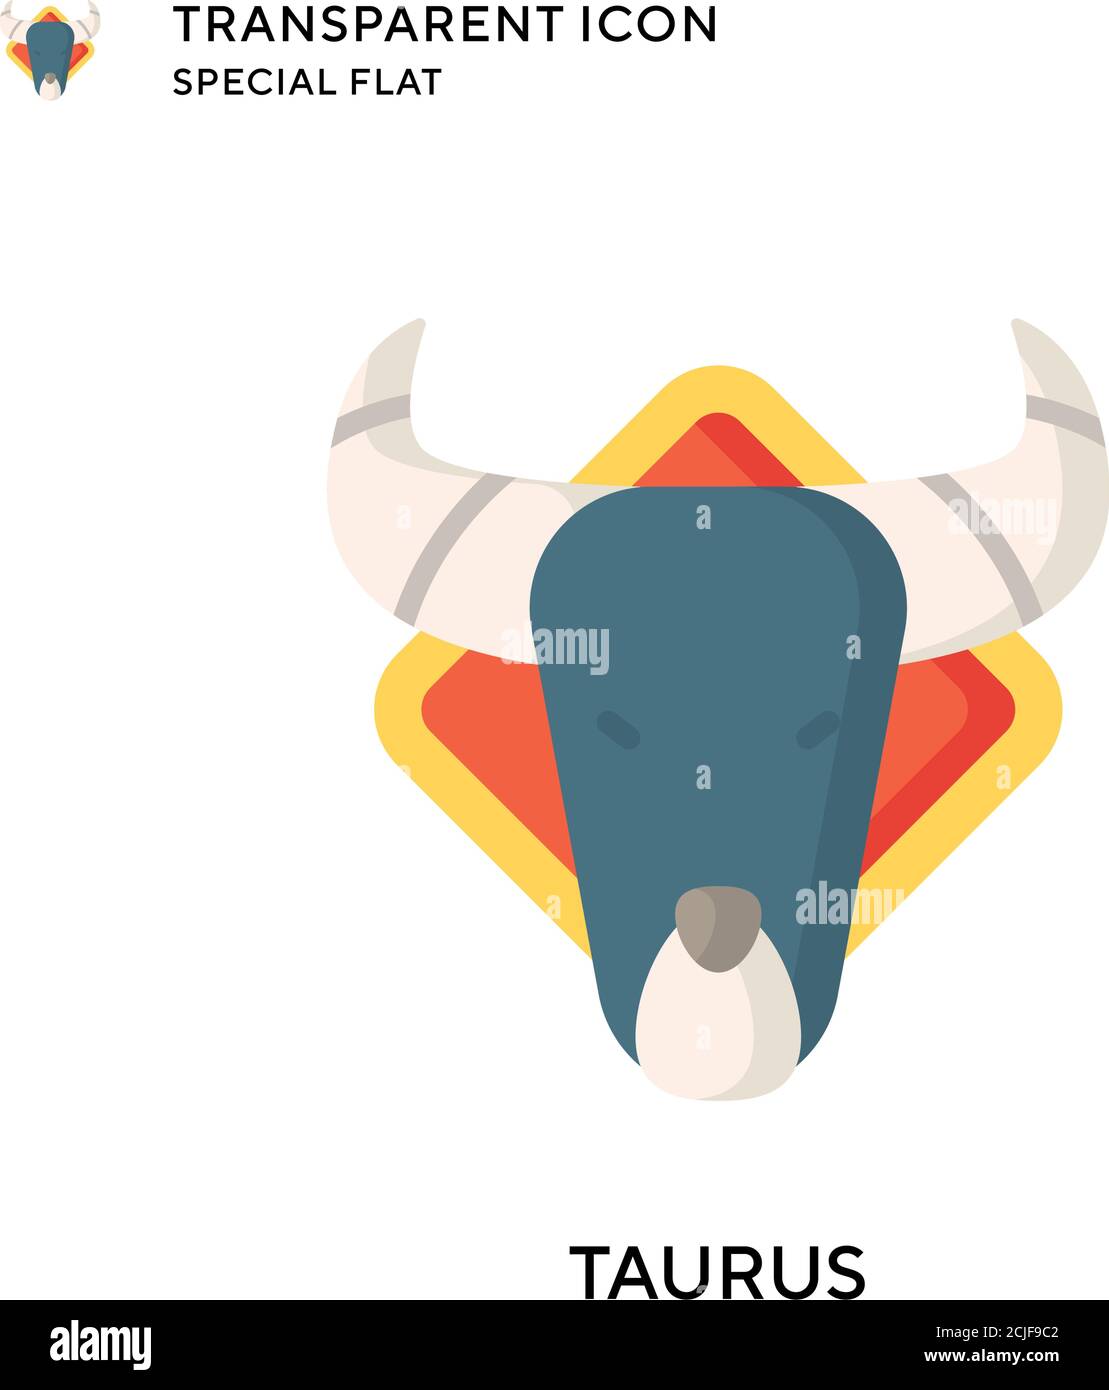 Taurus vector icon. Flat style illustration. EPS 10 vector. Stock Vector